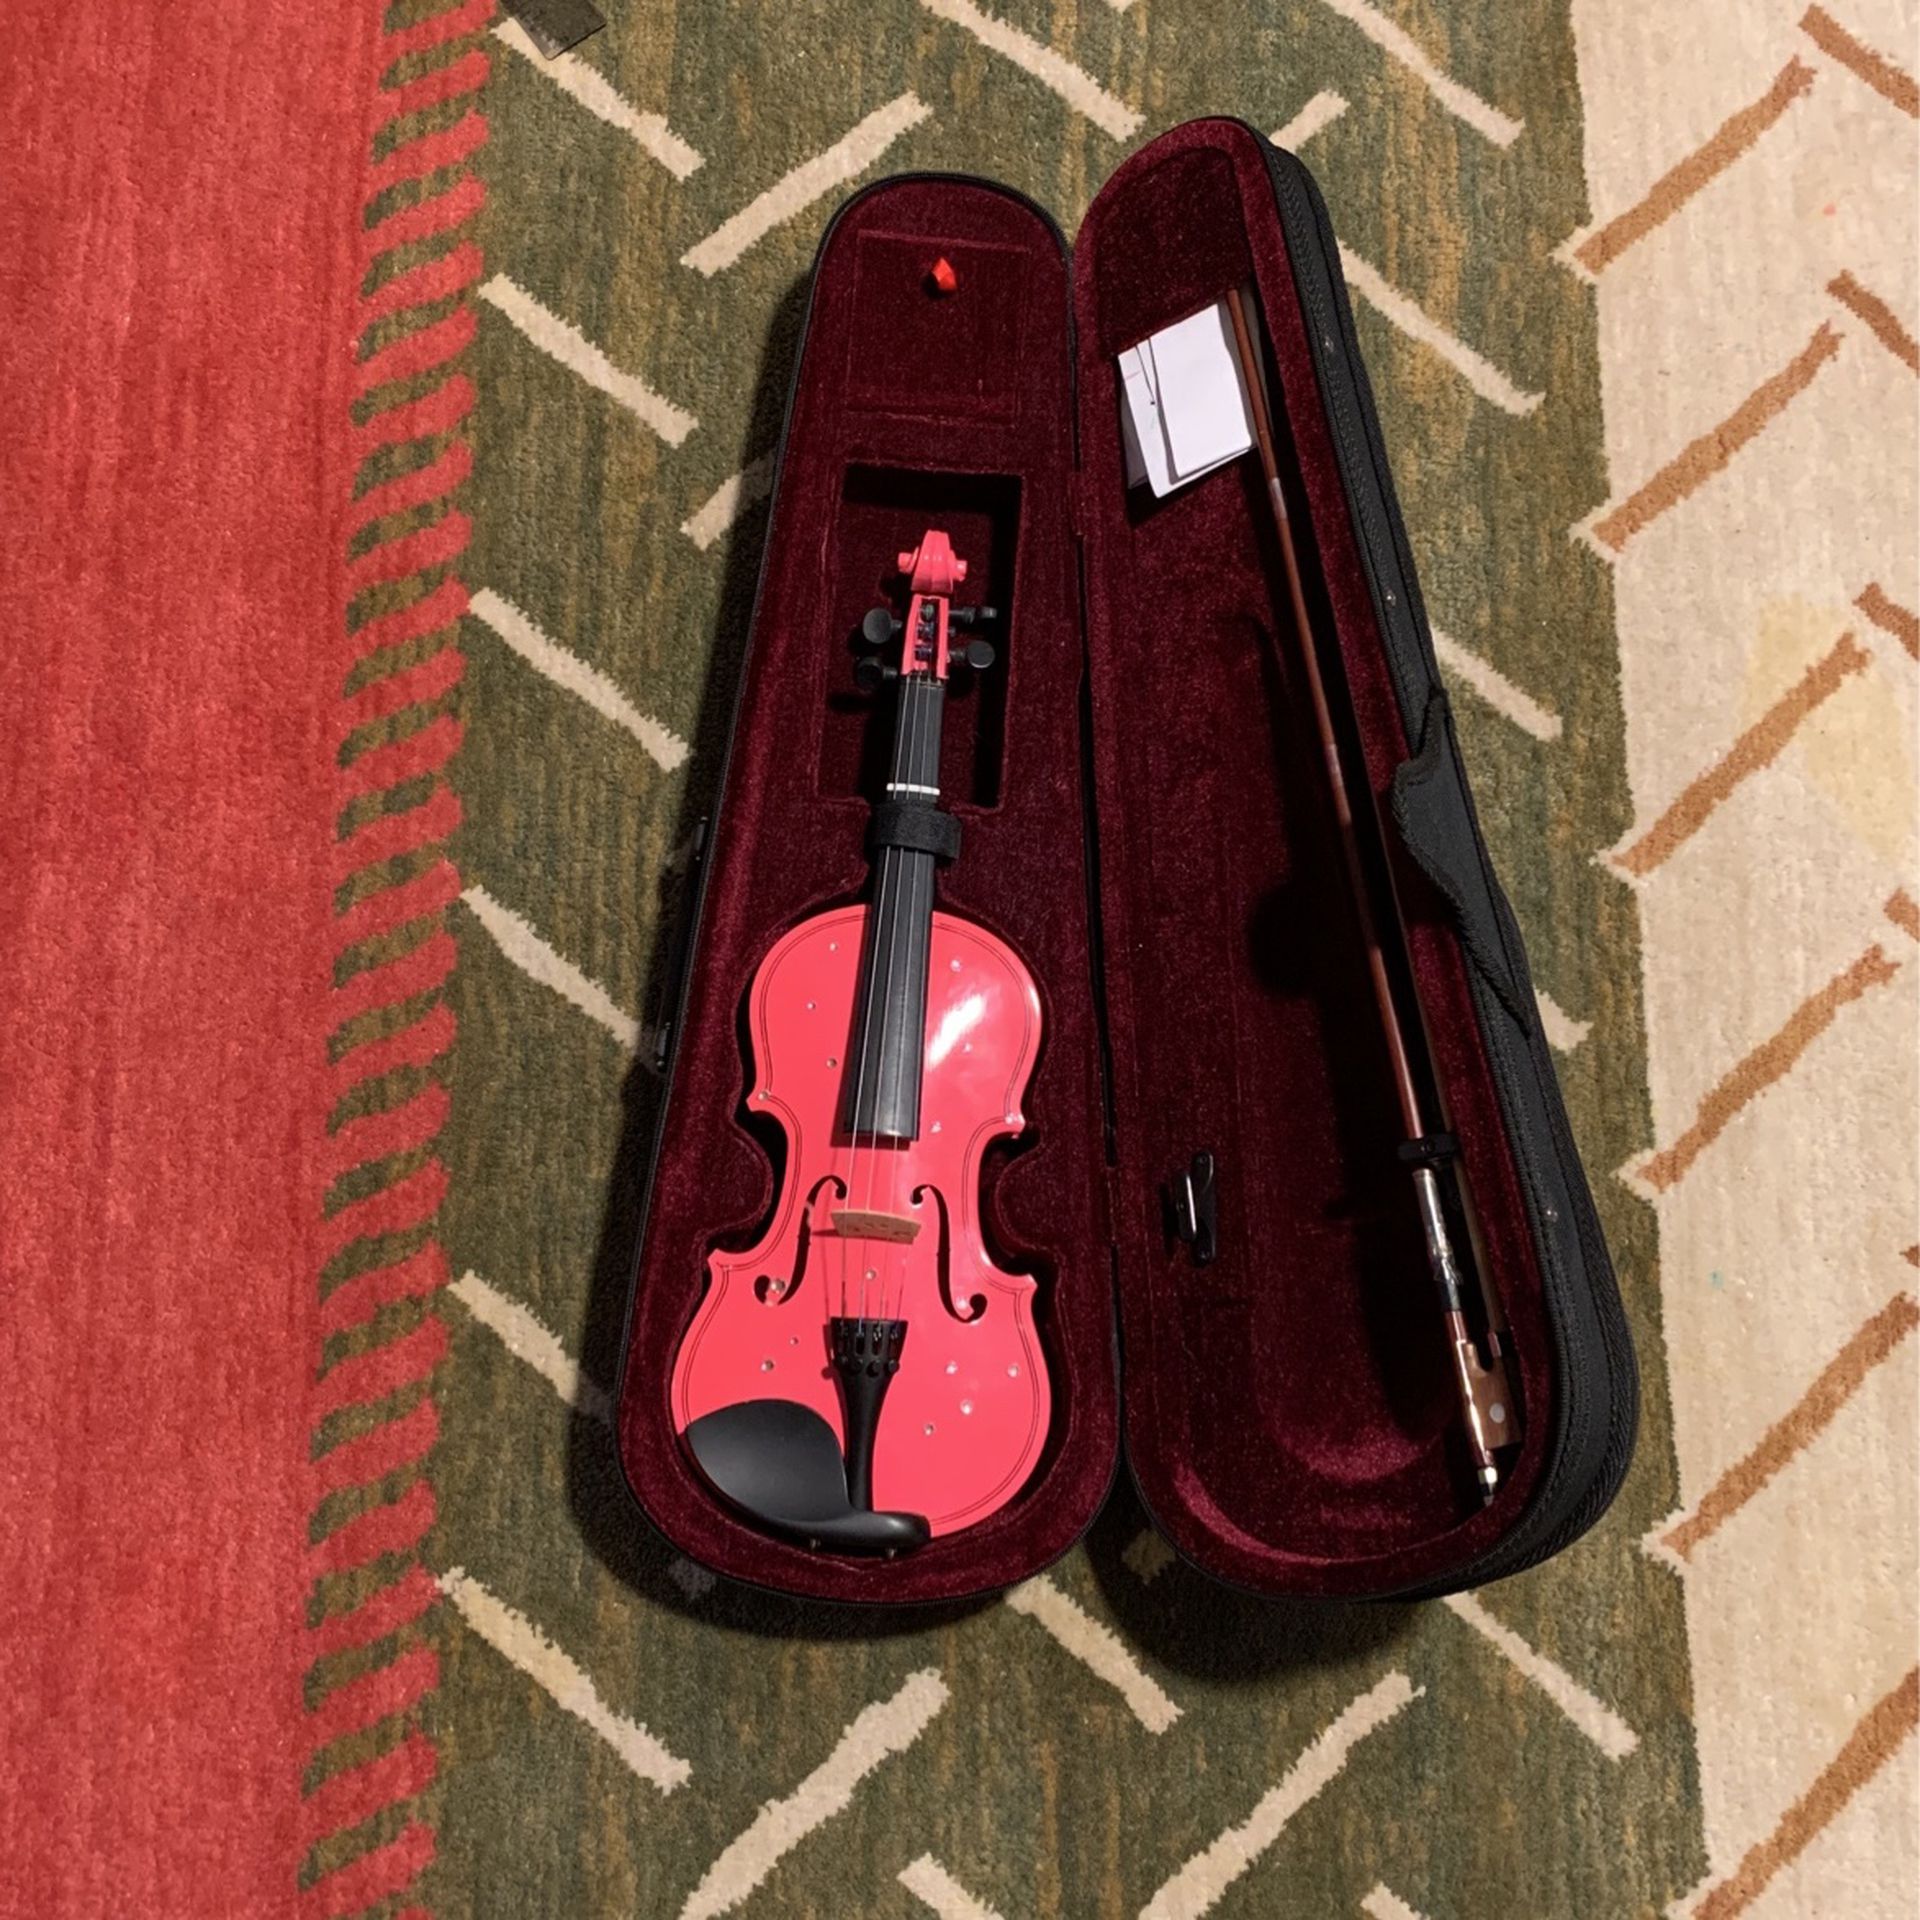 18” Violin